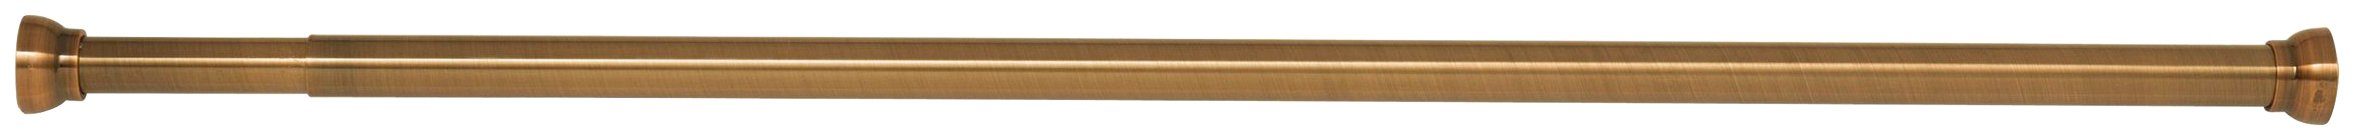 Klemmstange Kreta, spirella, Ø 21 mm, kürzbar, mit Bohren, Aluminium, für Duschvorhänge, Länge 75-125 cm gold | Gardinenstangen